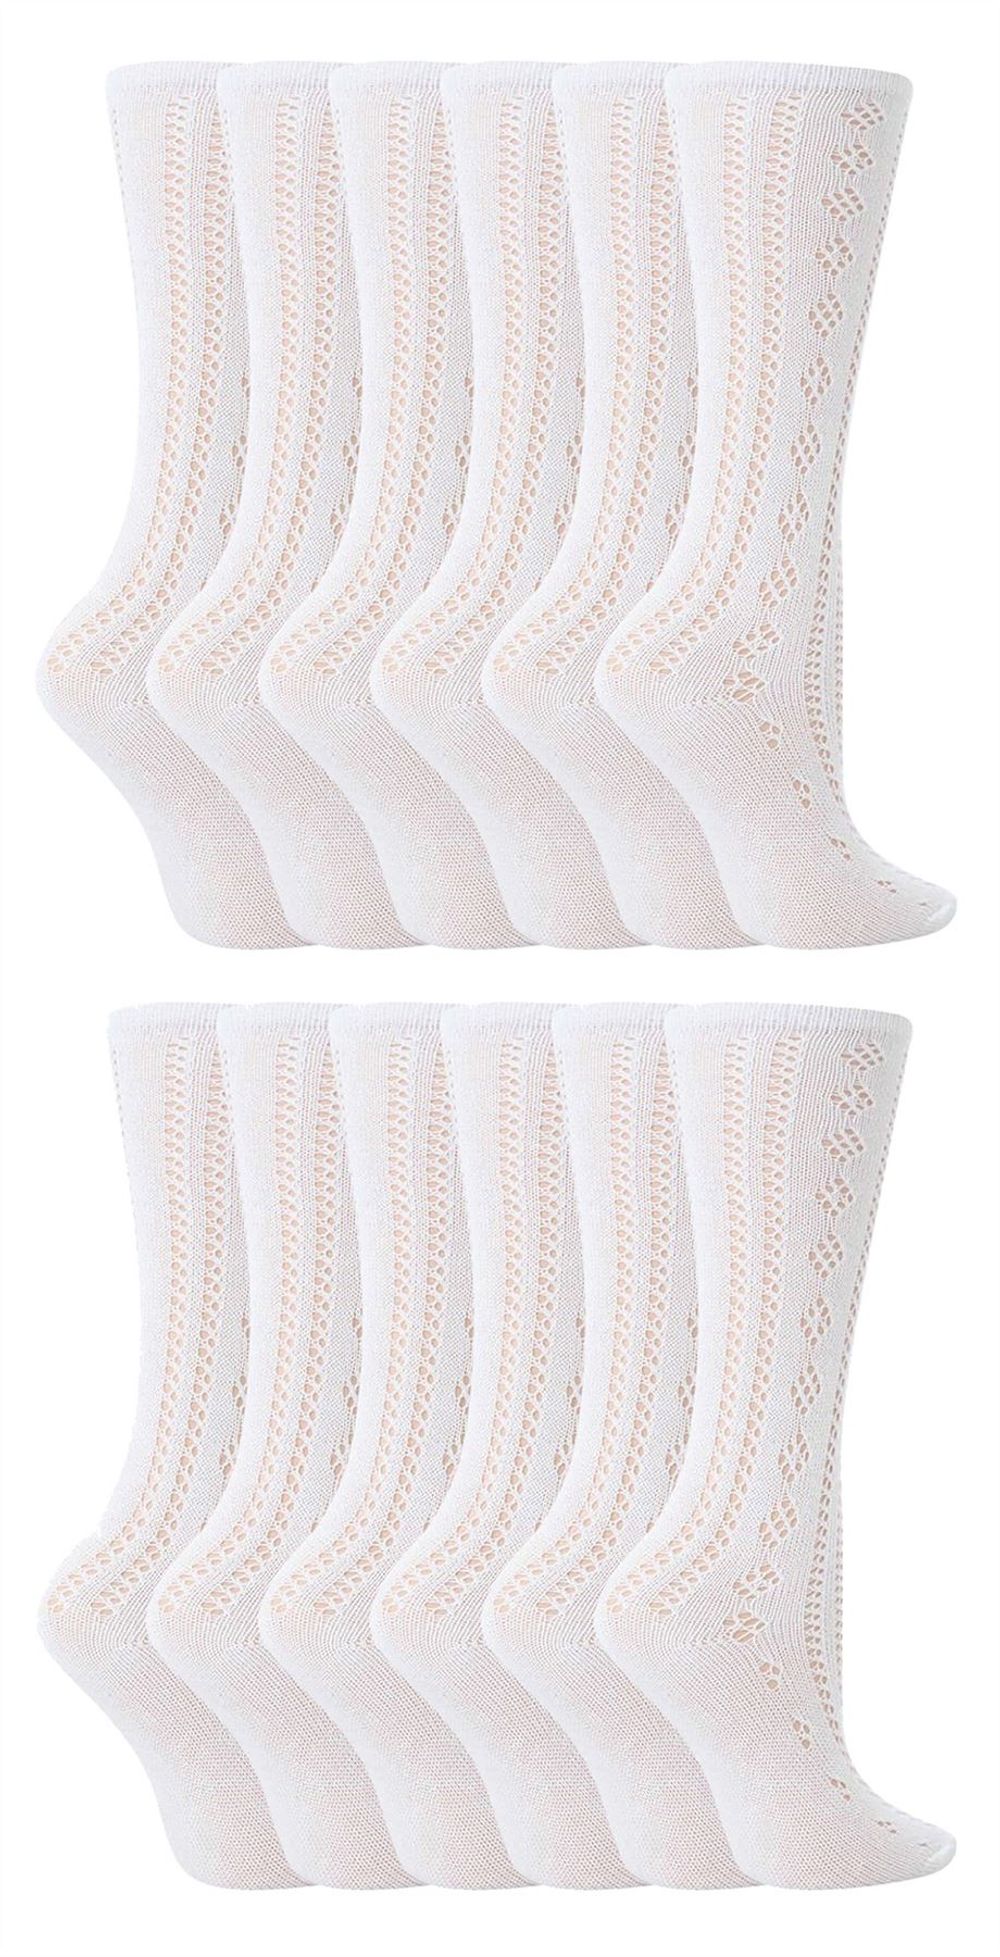 12 Pairs Girls Pelerine Socks